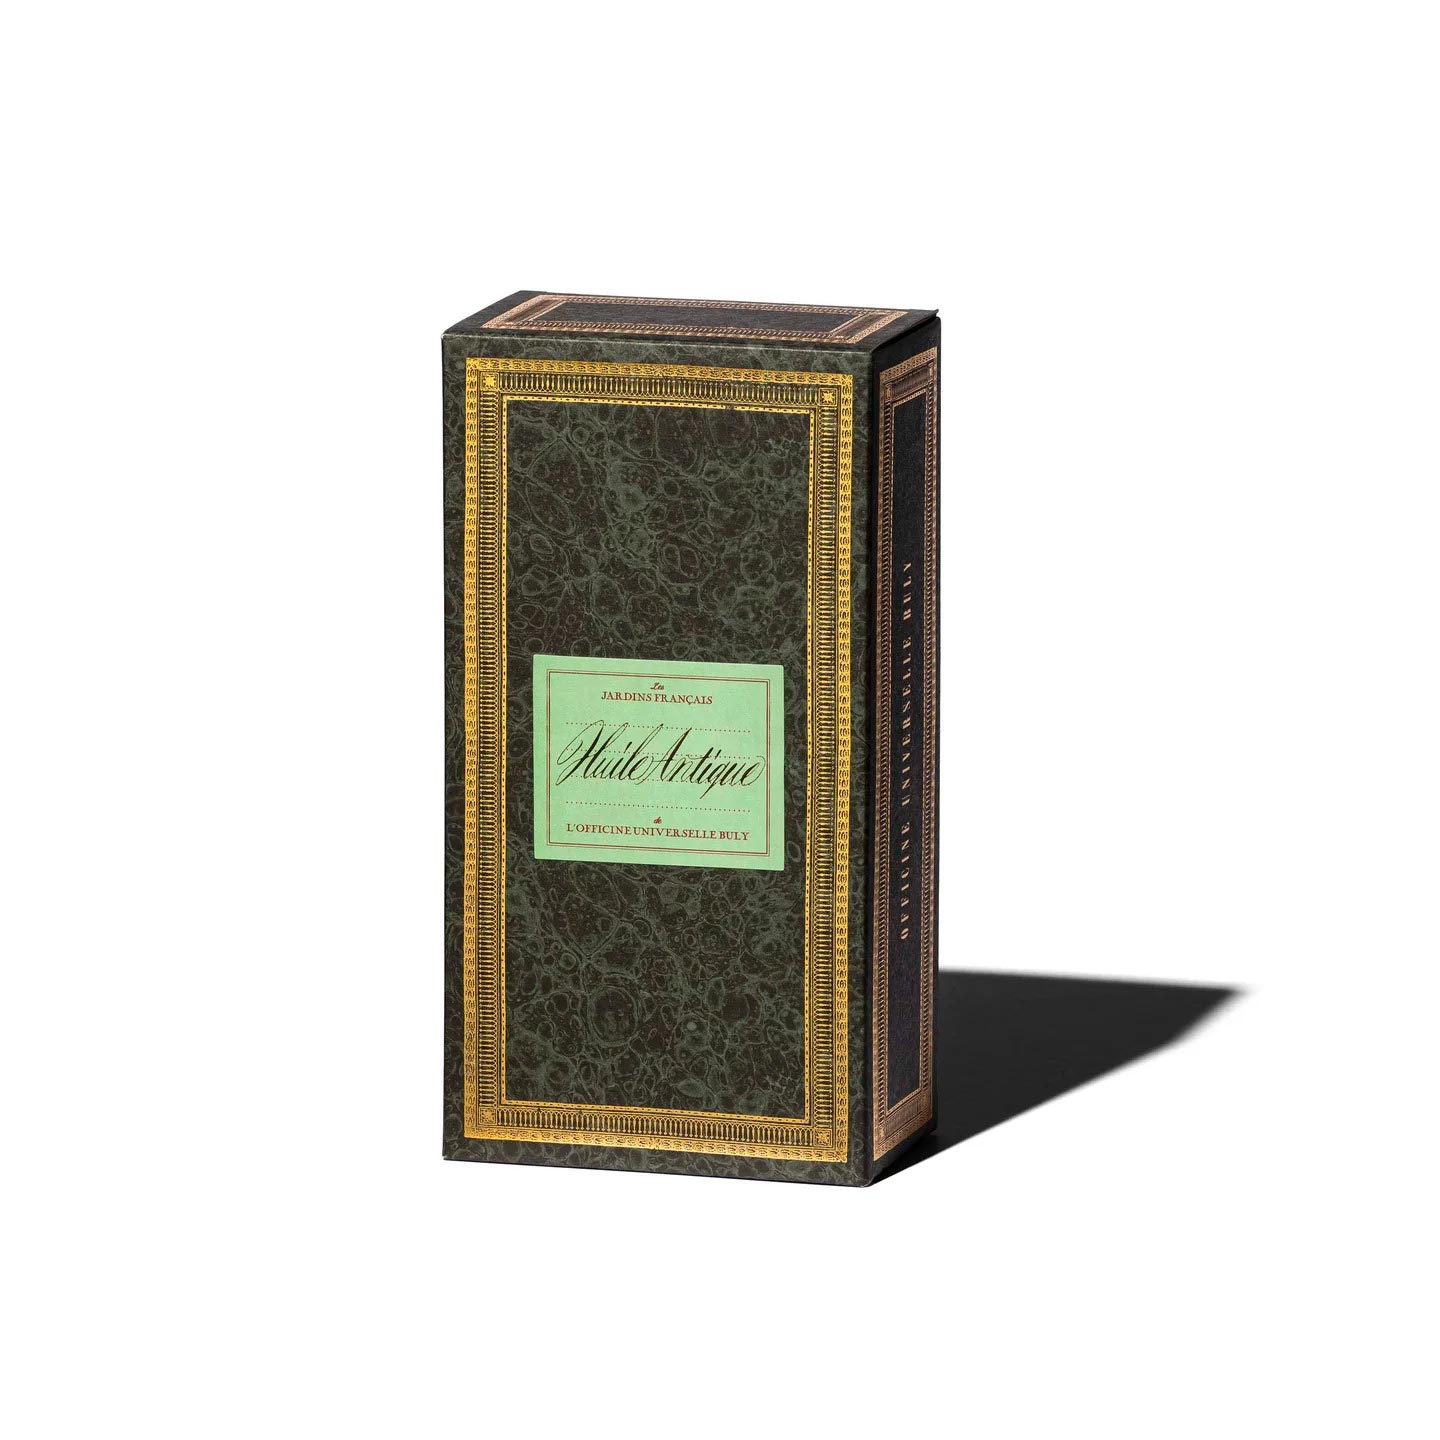 Buly 1803, une marque aux packaging extraordinaires, mêlant art et histoire